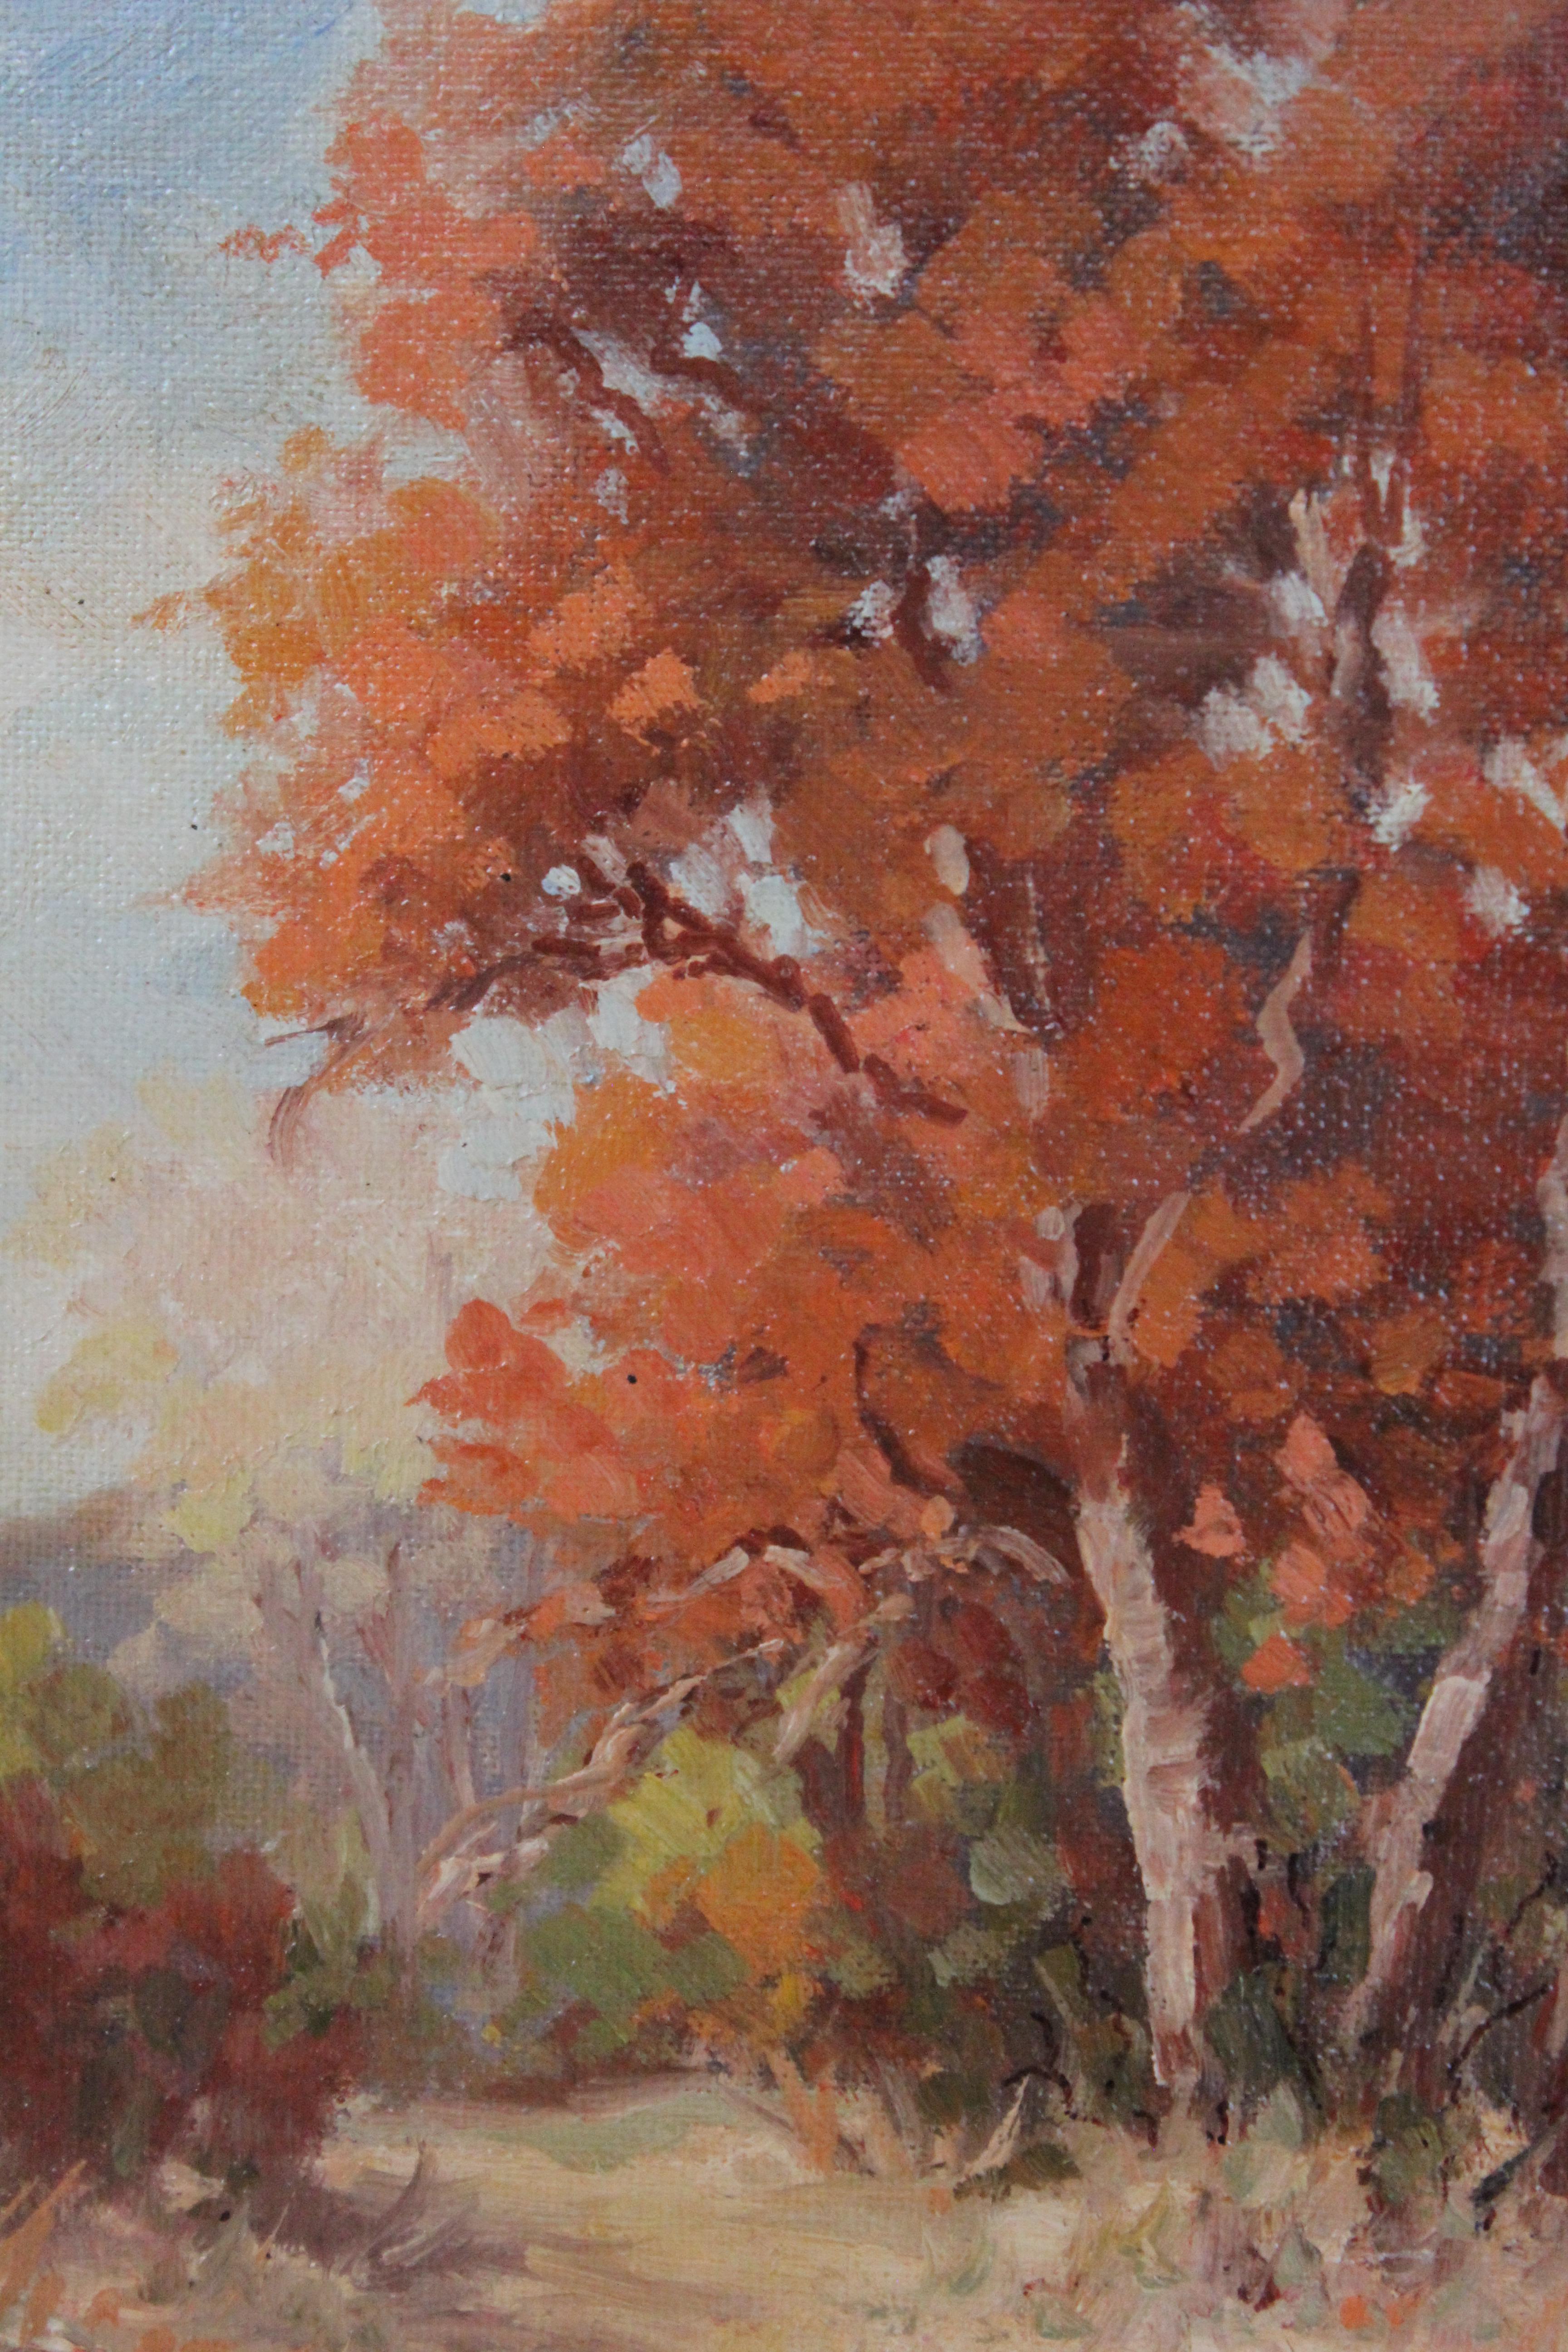 Herbst Impressionistische Landschaft – Painting von Hazel Massey